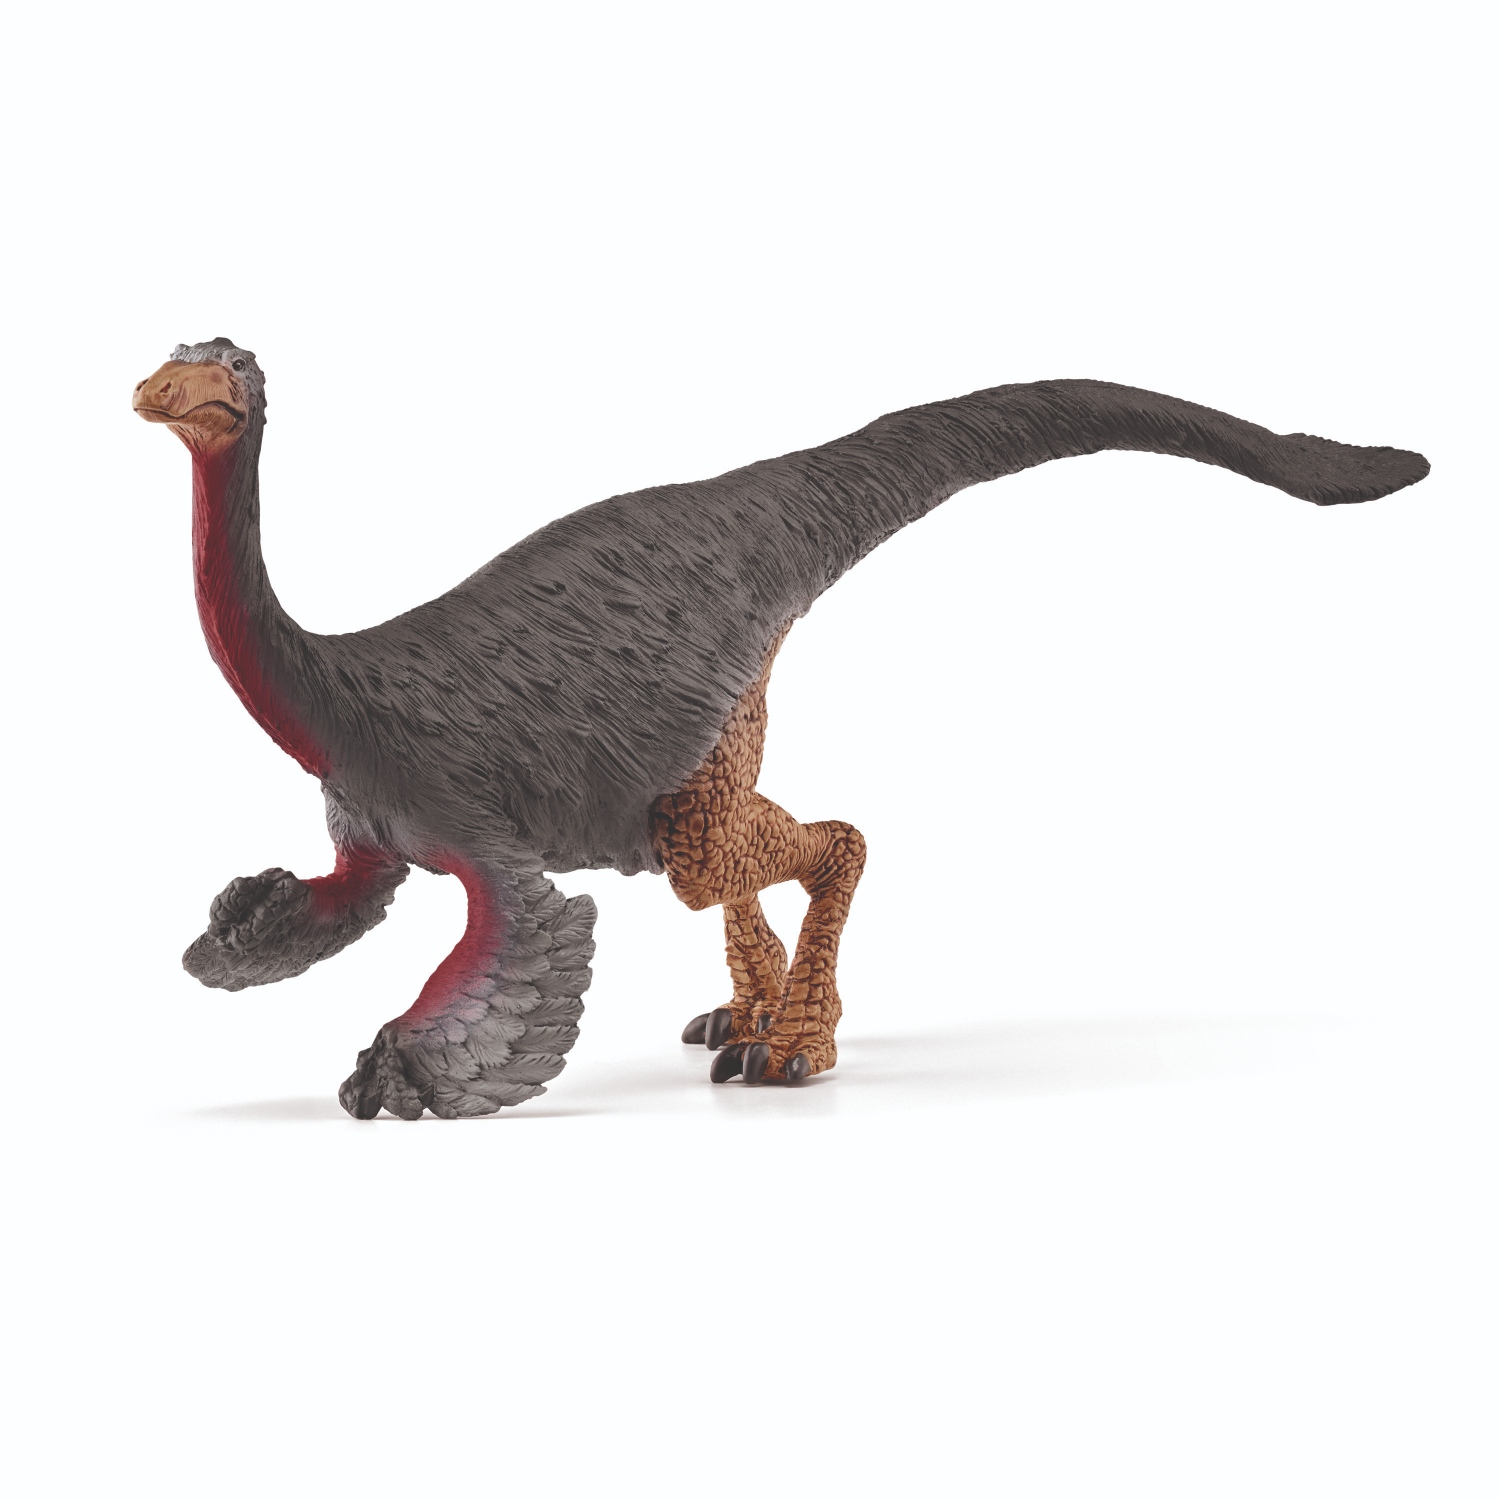 Schleich 15038 - Dinosaurs, Gallimimus, Dinosaurier, Tierfigur